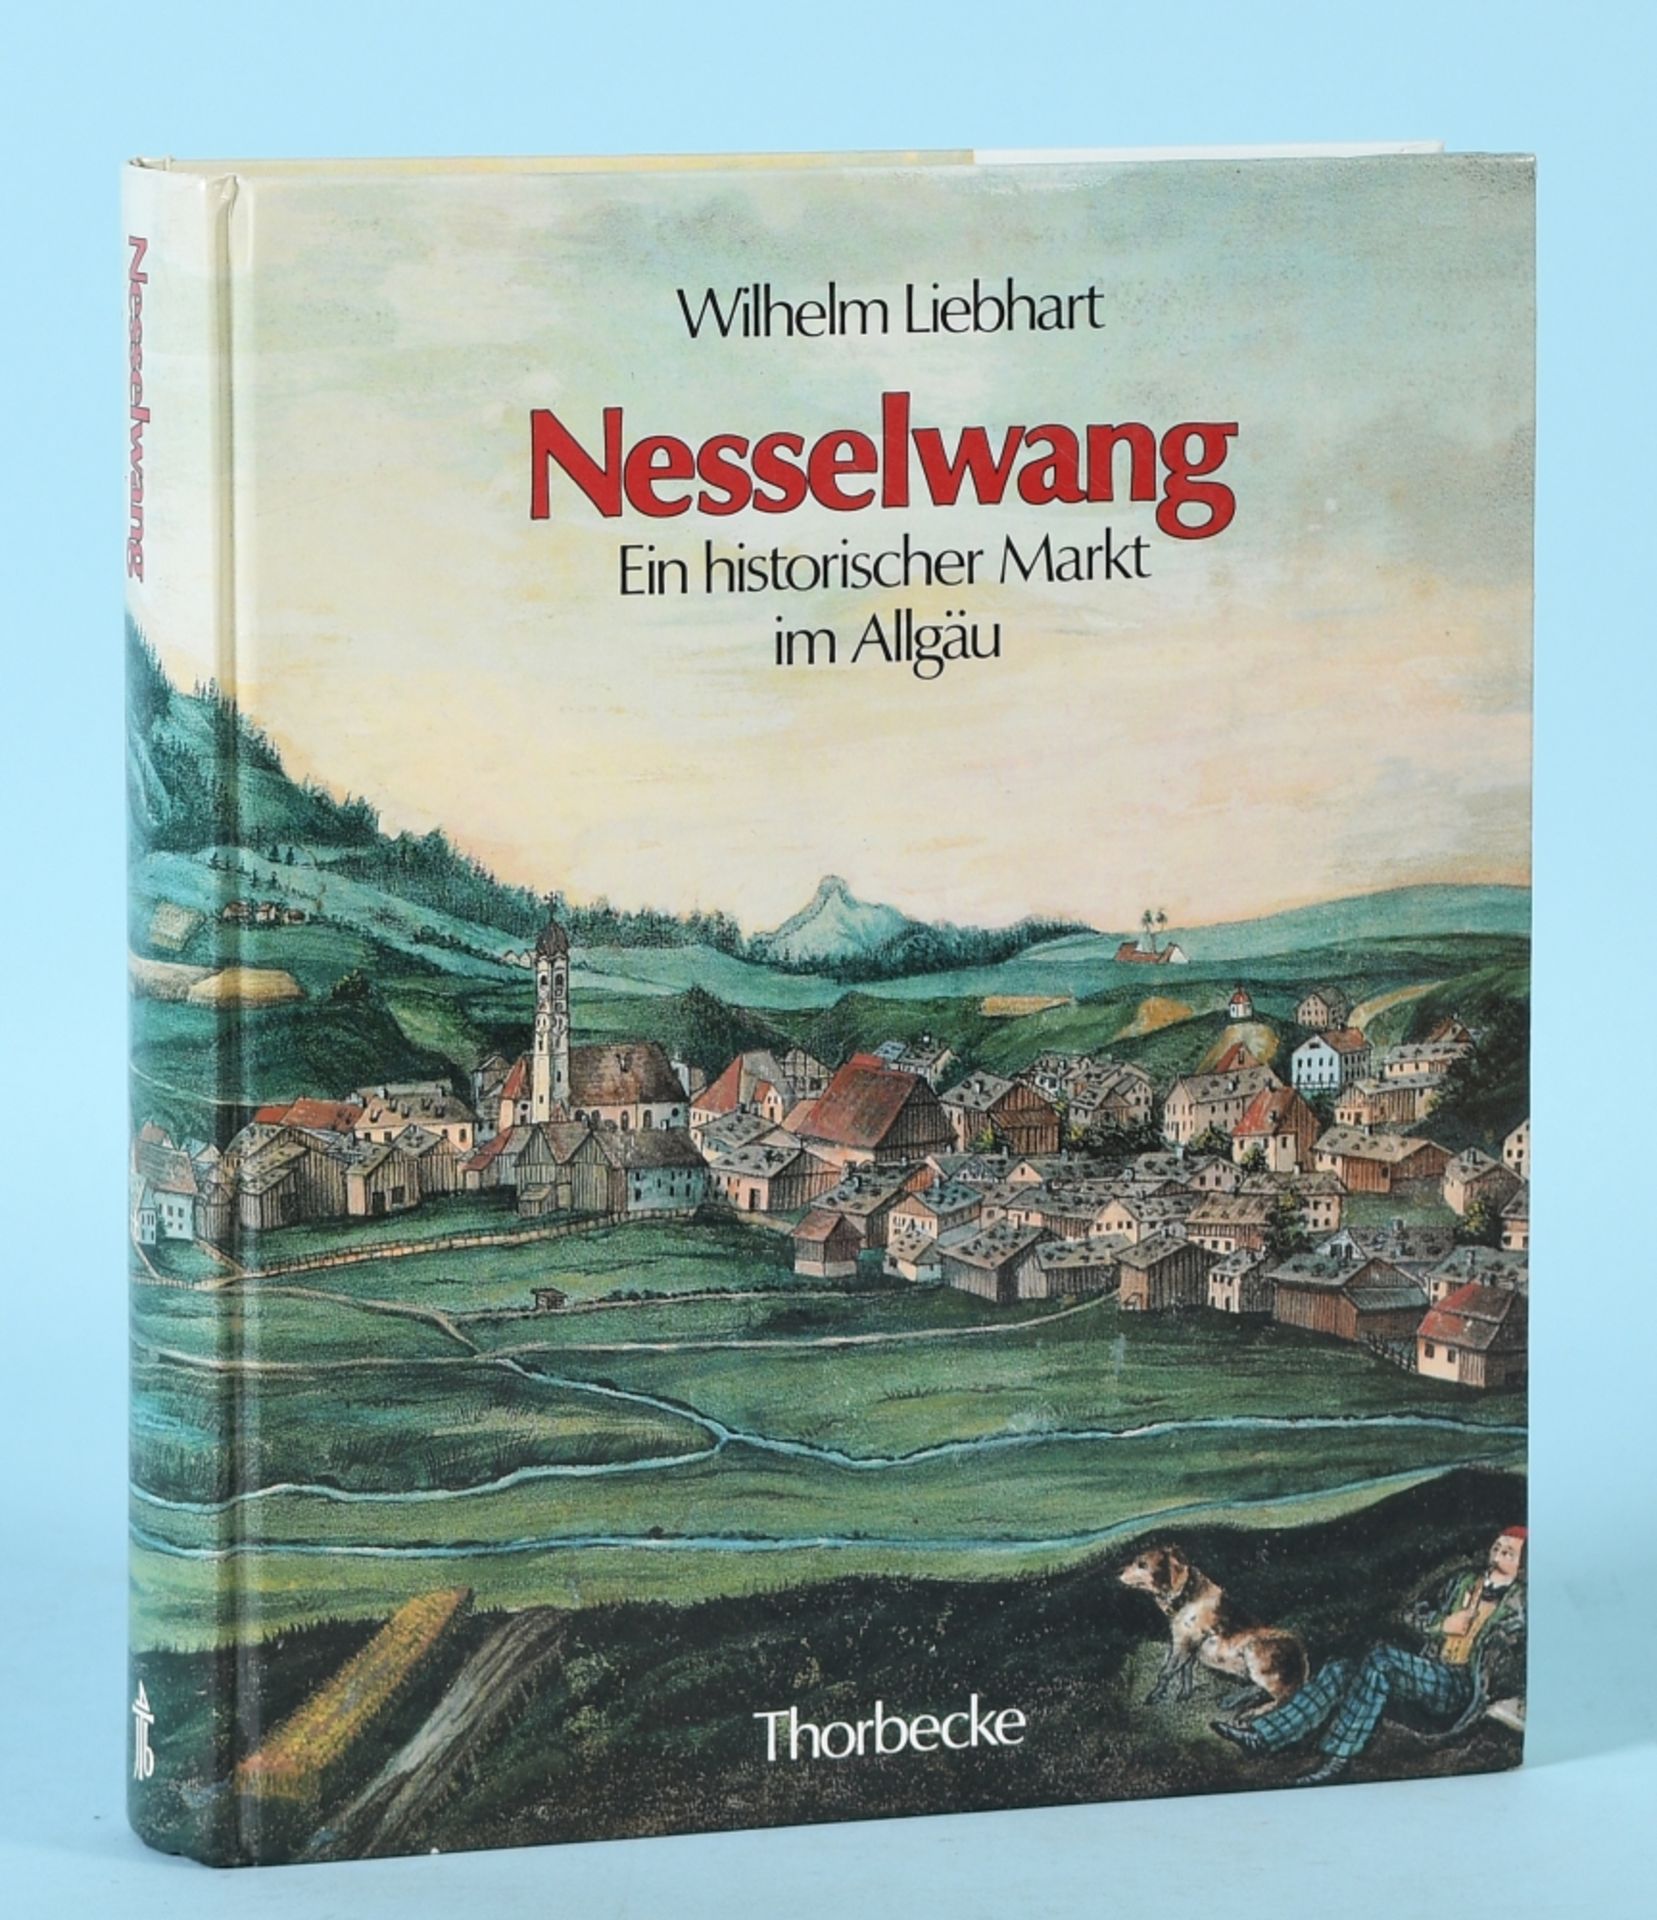 Liebhart, Wilhelm "Nesselwang - Ein historischer Markt im Allgäu"